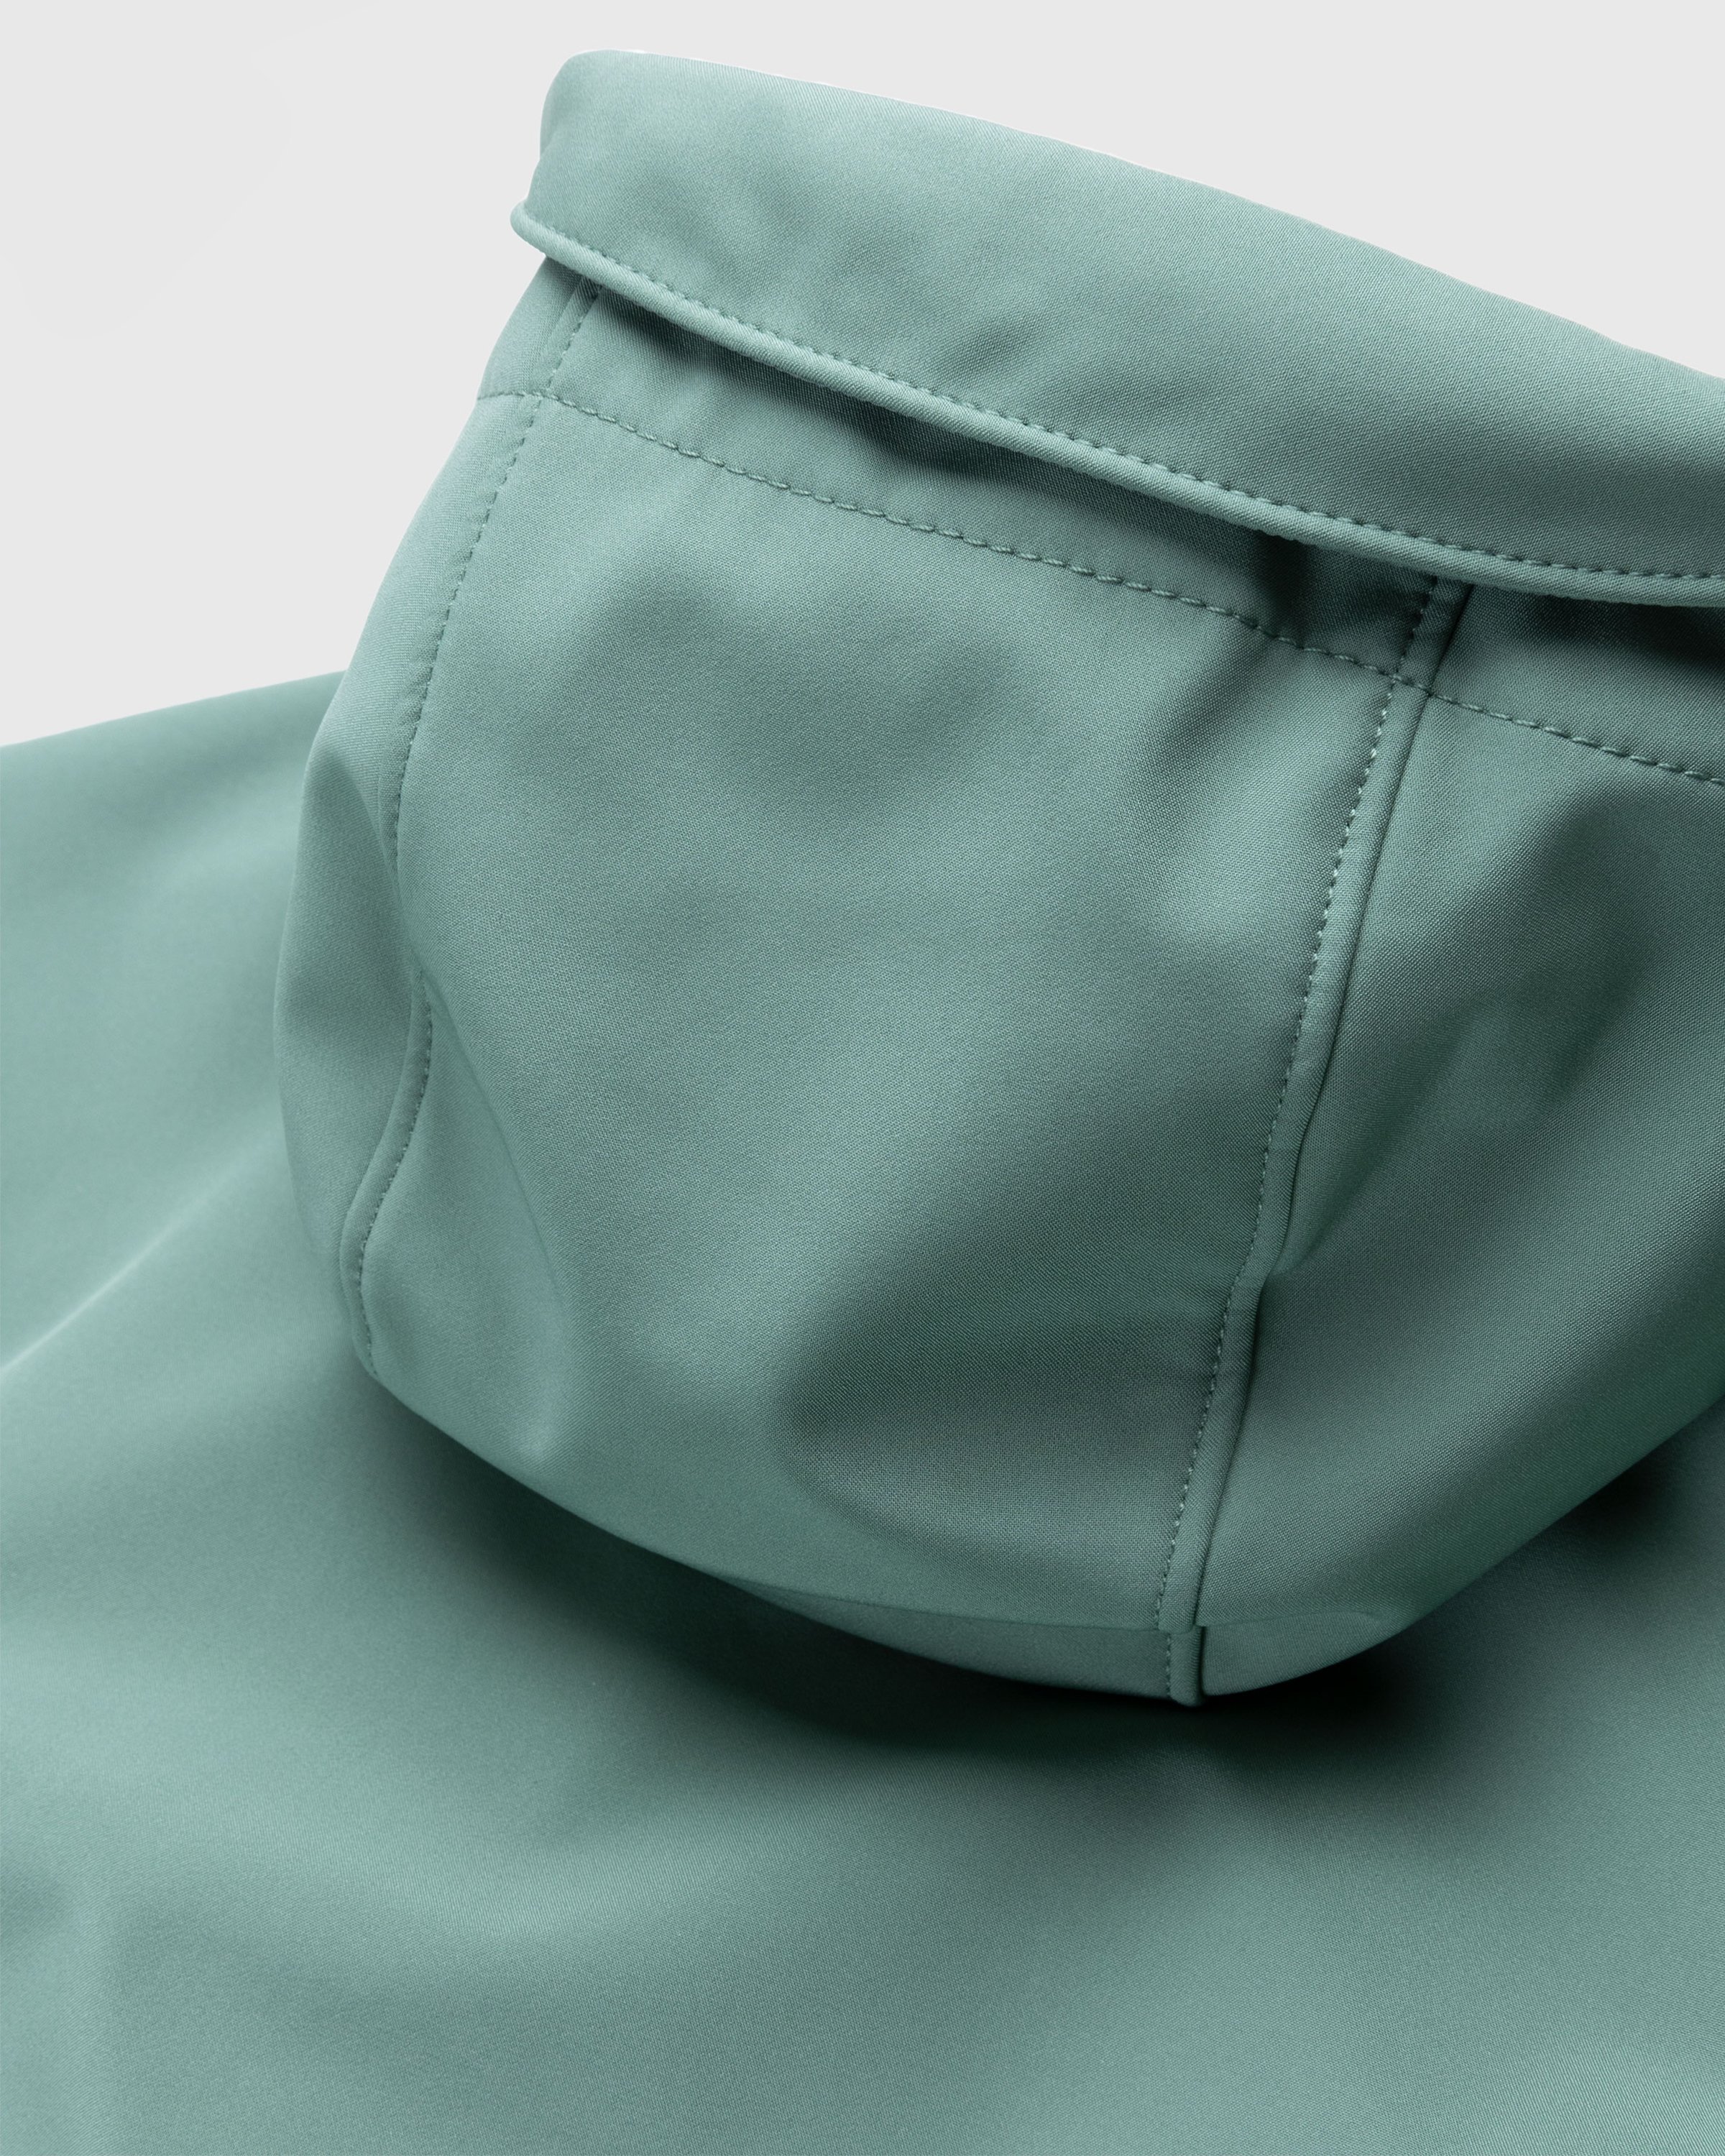 Stone Island - Soft Shell Hooded Jacket Sage - Clothing - Green - Image 4